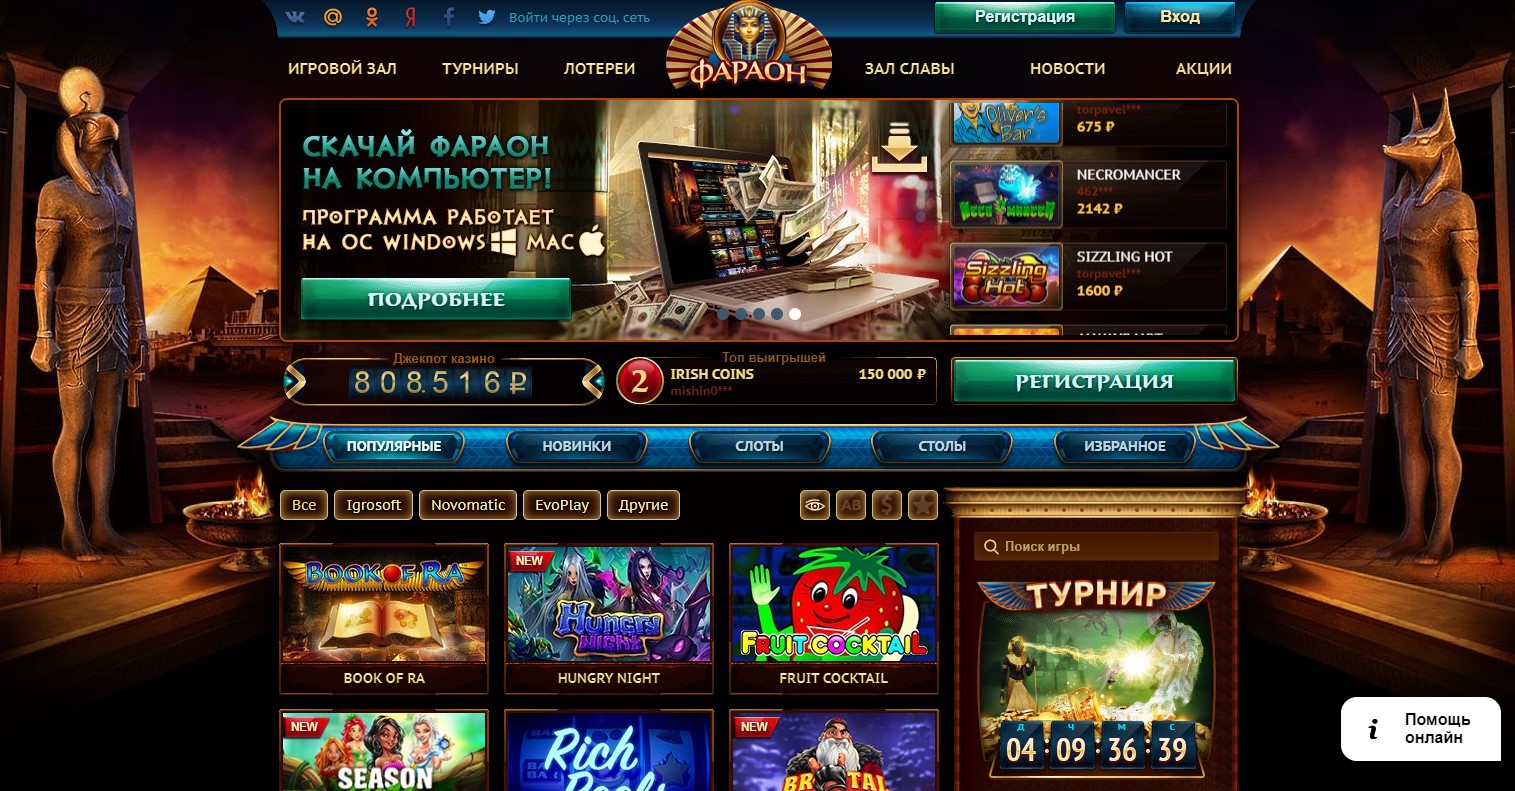 Casino pharaon вход как стать партнером вулкан казино